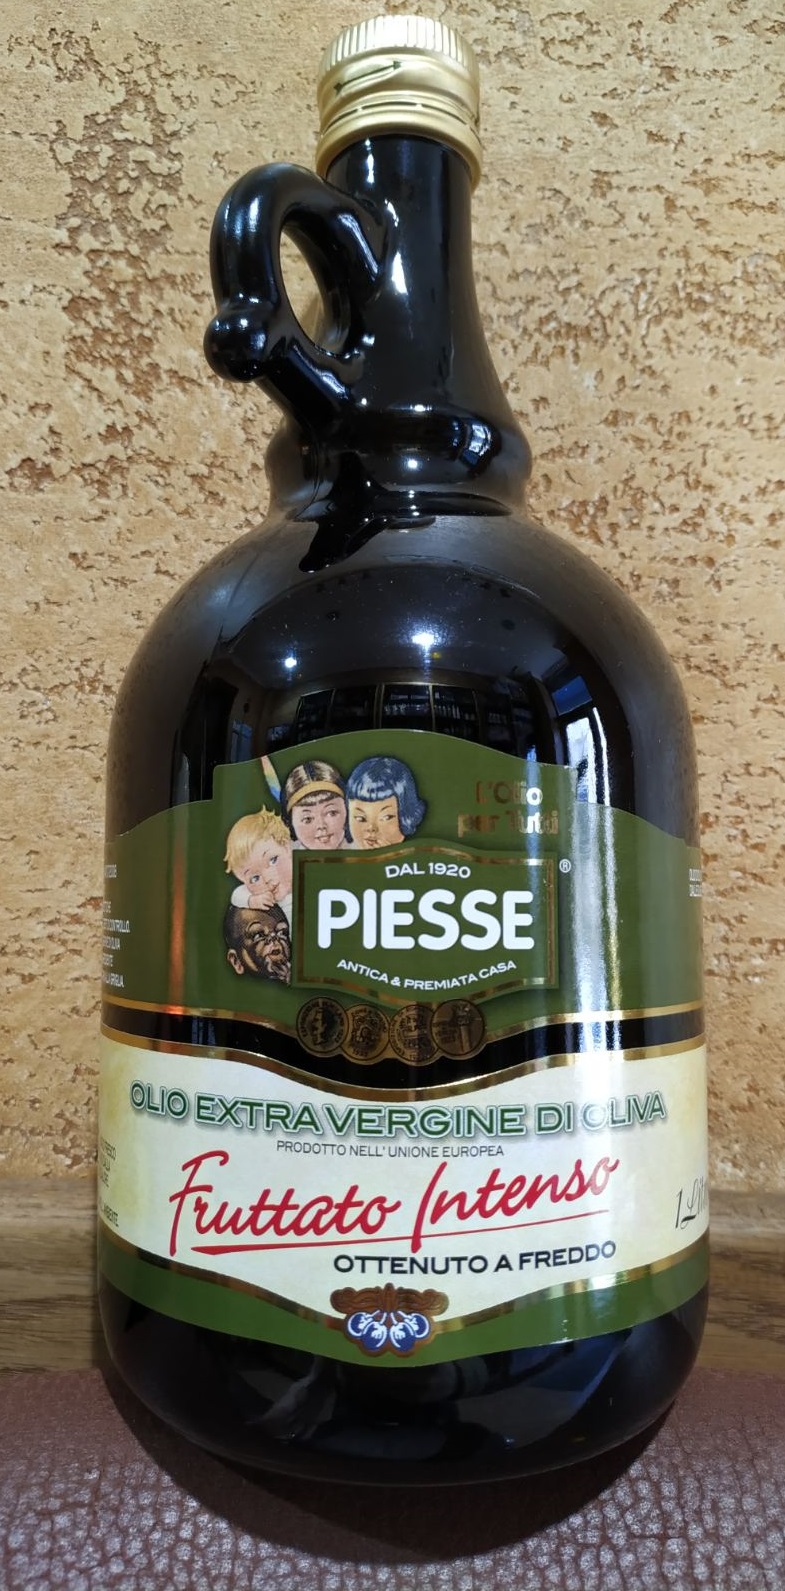 Оливковое масло Piesse Fruttato Olio Extra Vergine di oliva Италия 1л первый холодный отжим